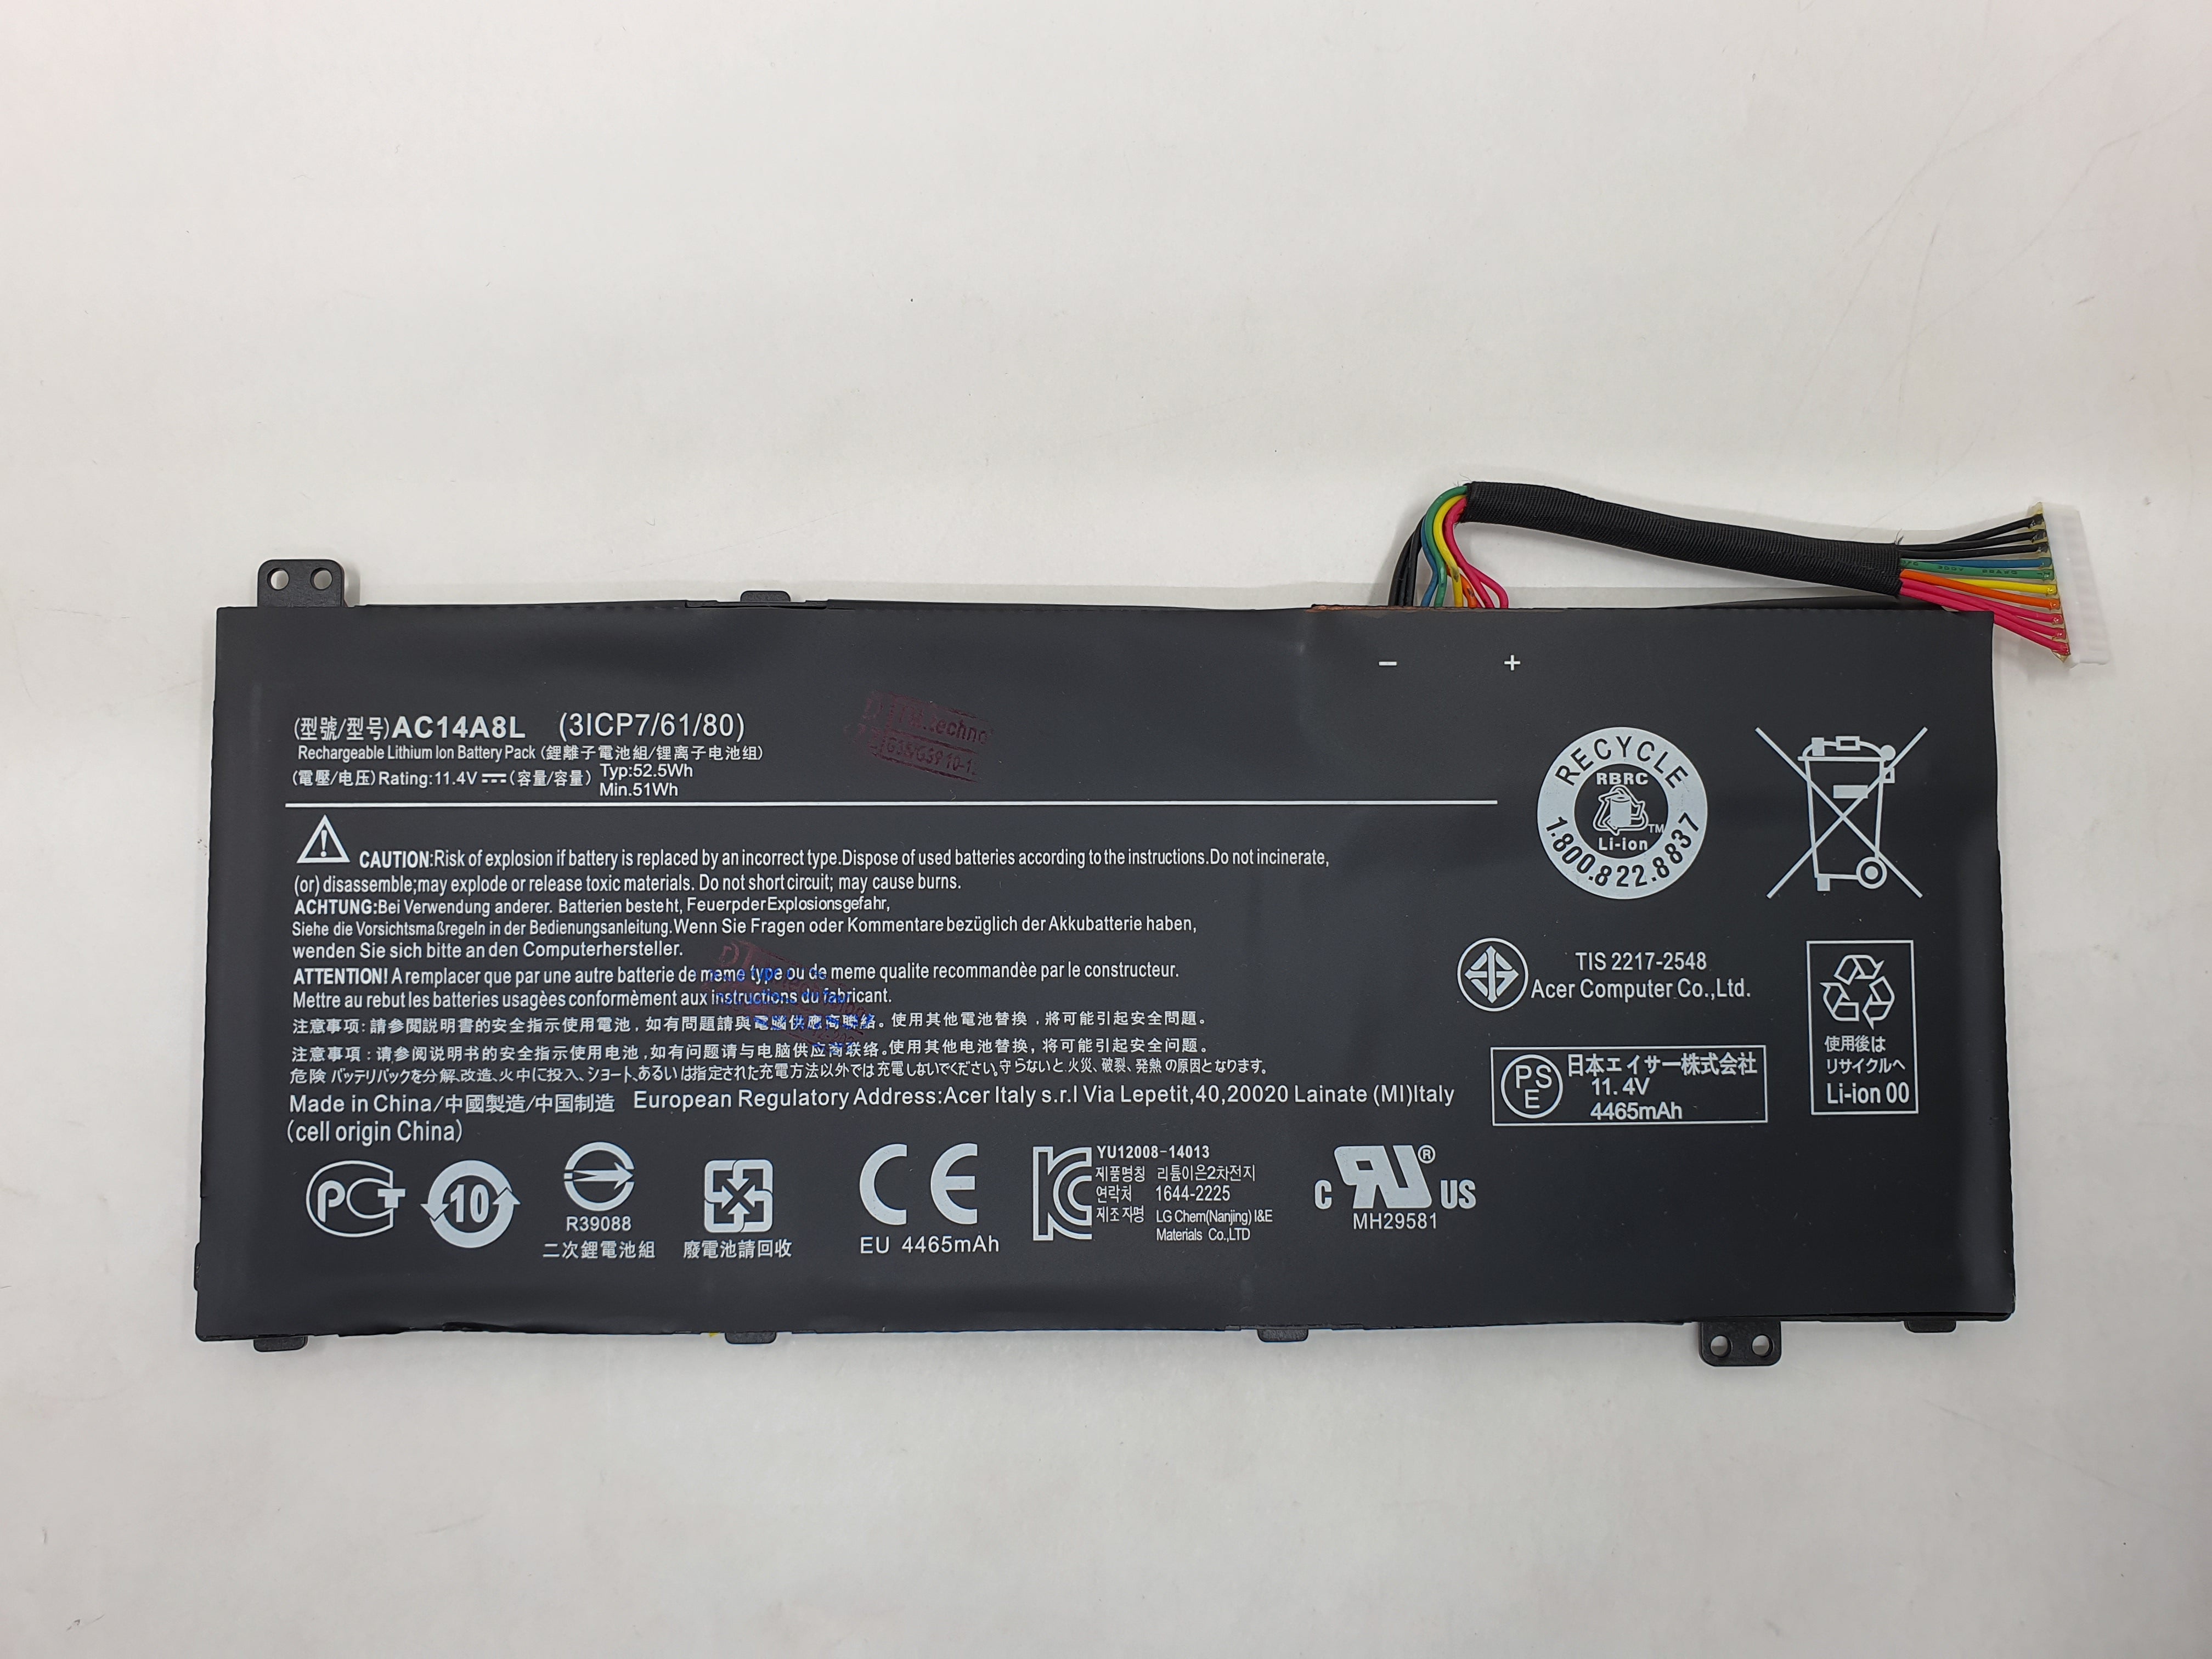 Acer Battery VX5-591G A1 for Acer Aspire VX 15 VX5-591G